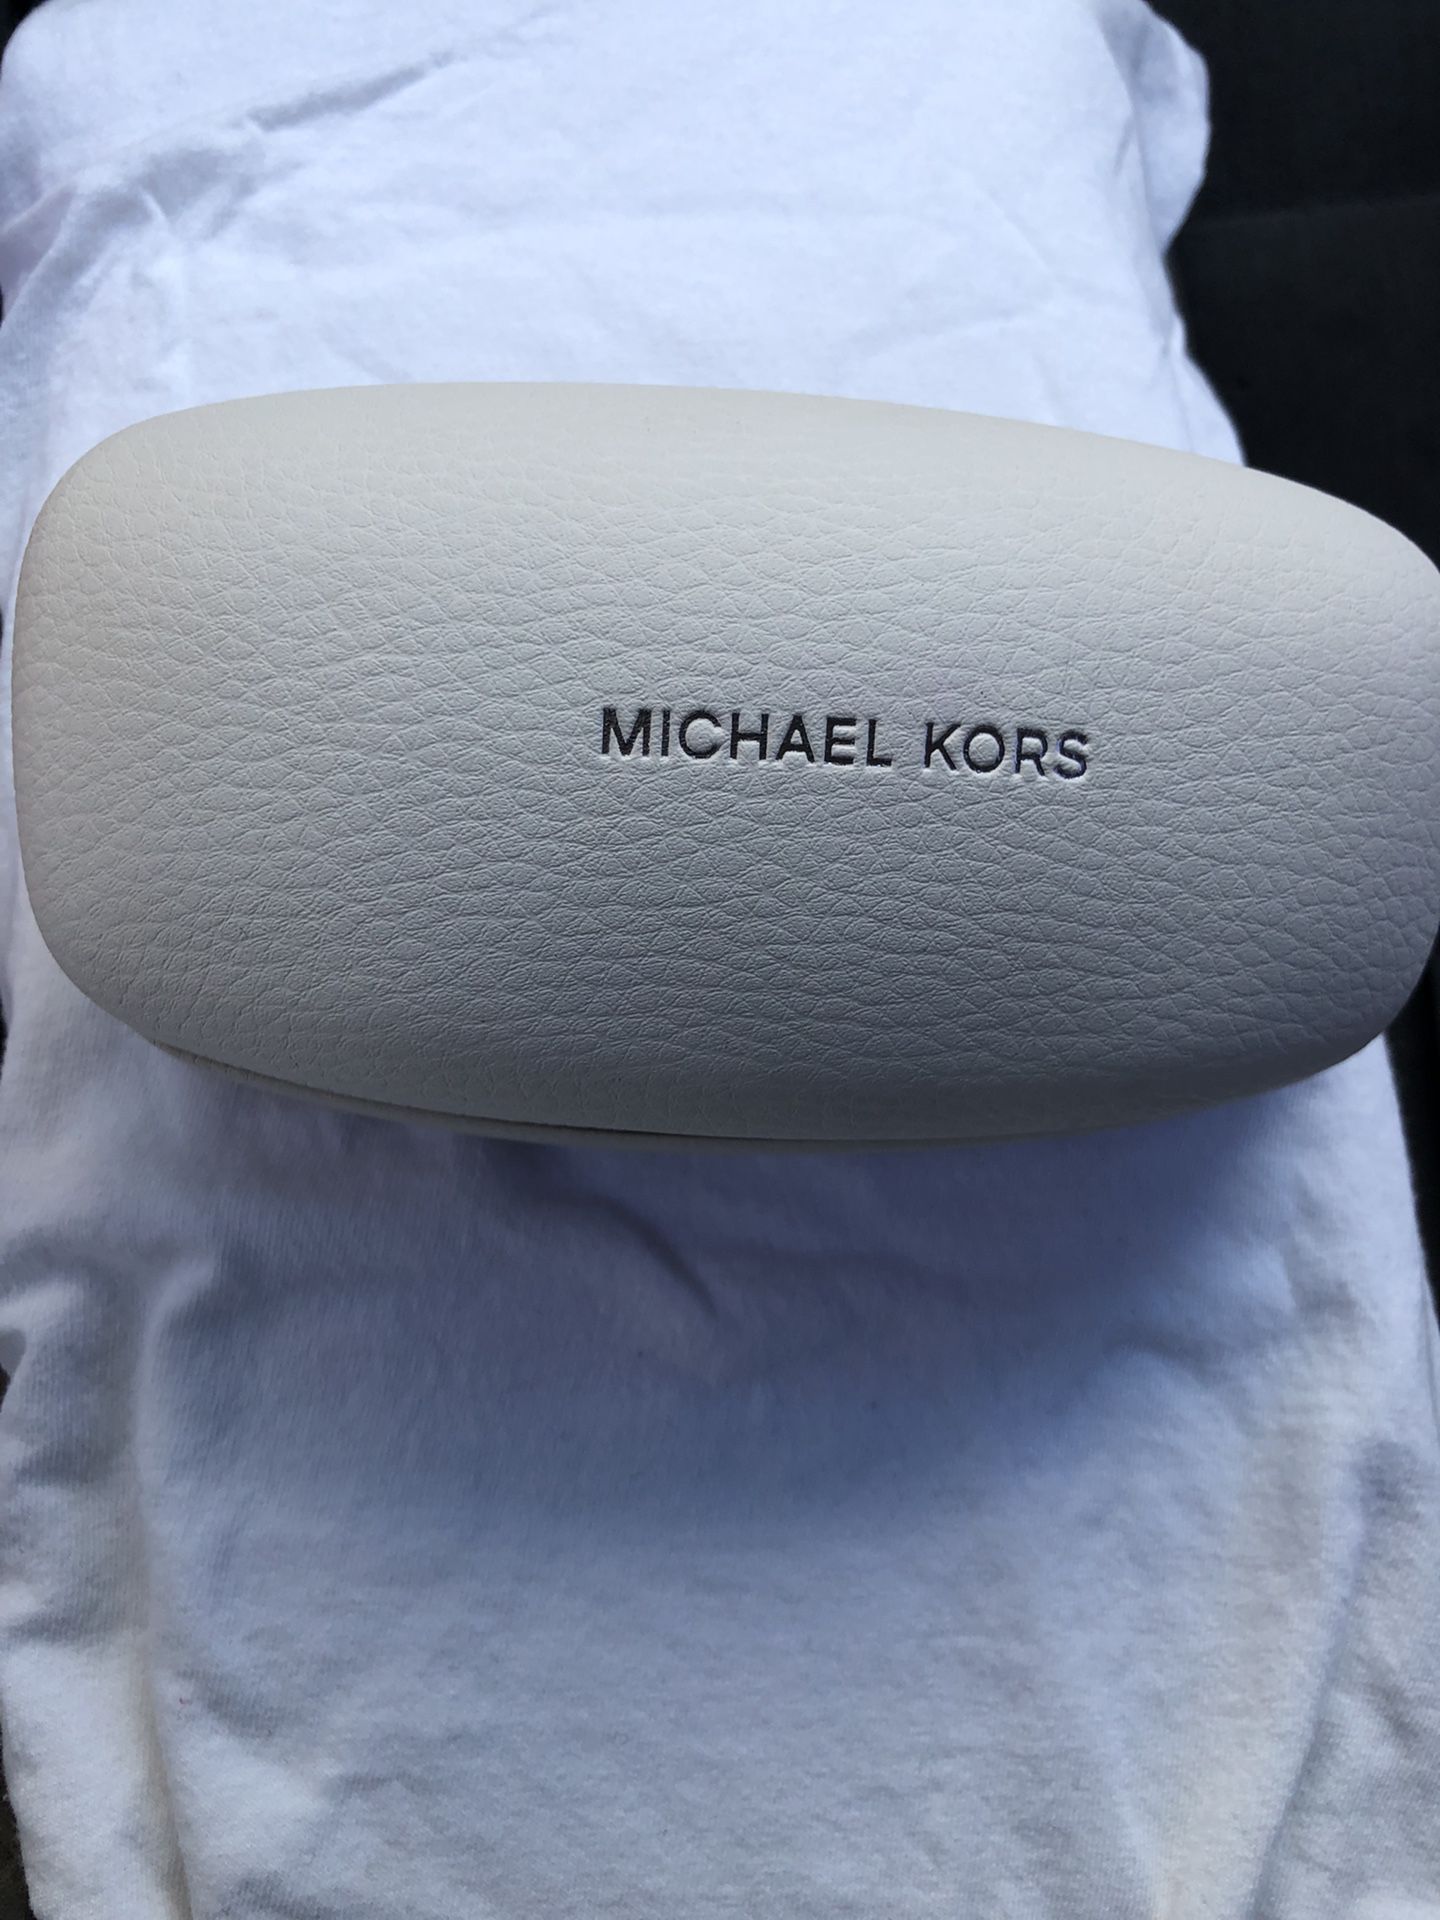 MICHAEL KORS Sunglasses MK 5013 10244L